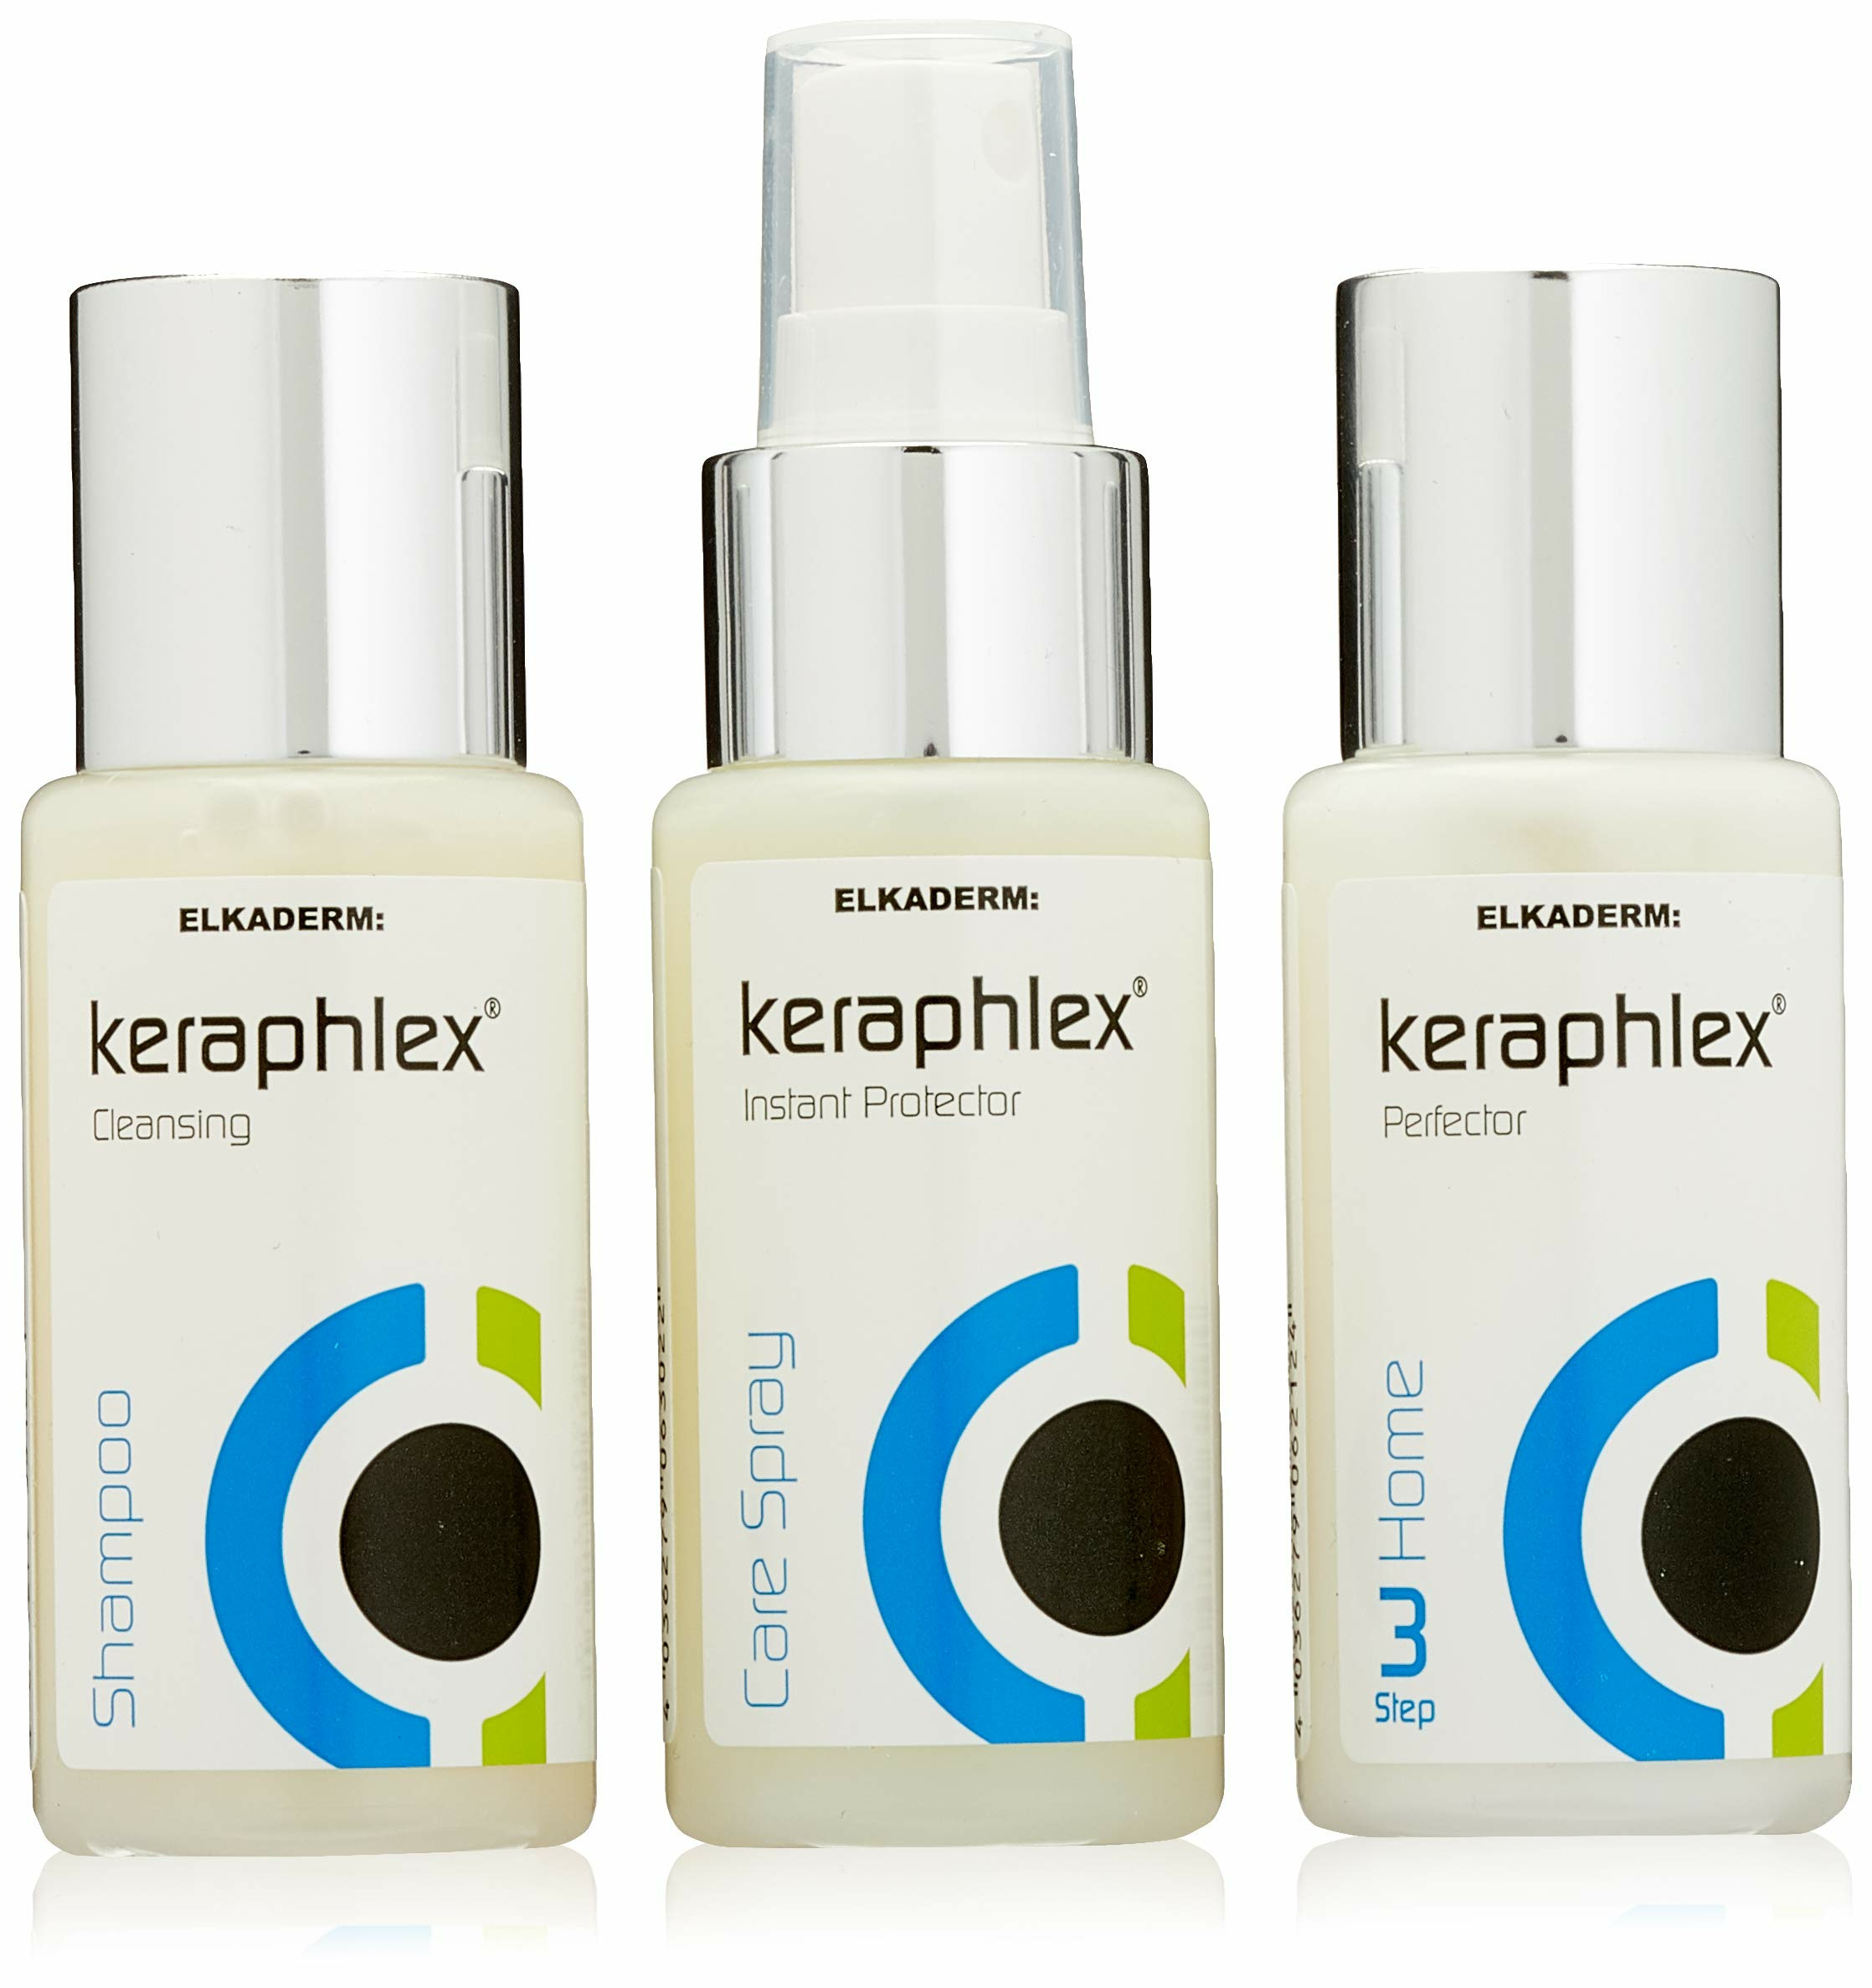 Keraphlex Haarpflege Power-Pack